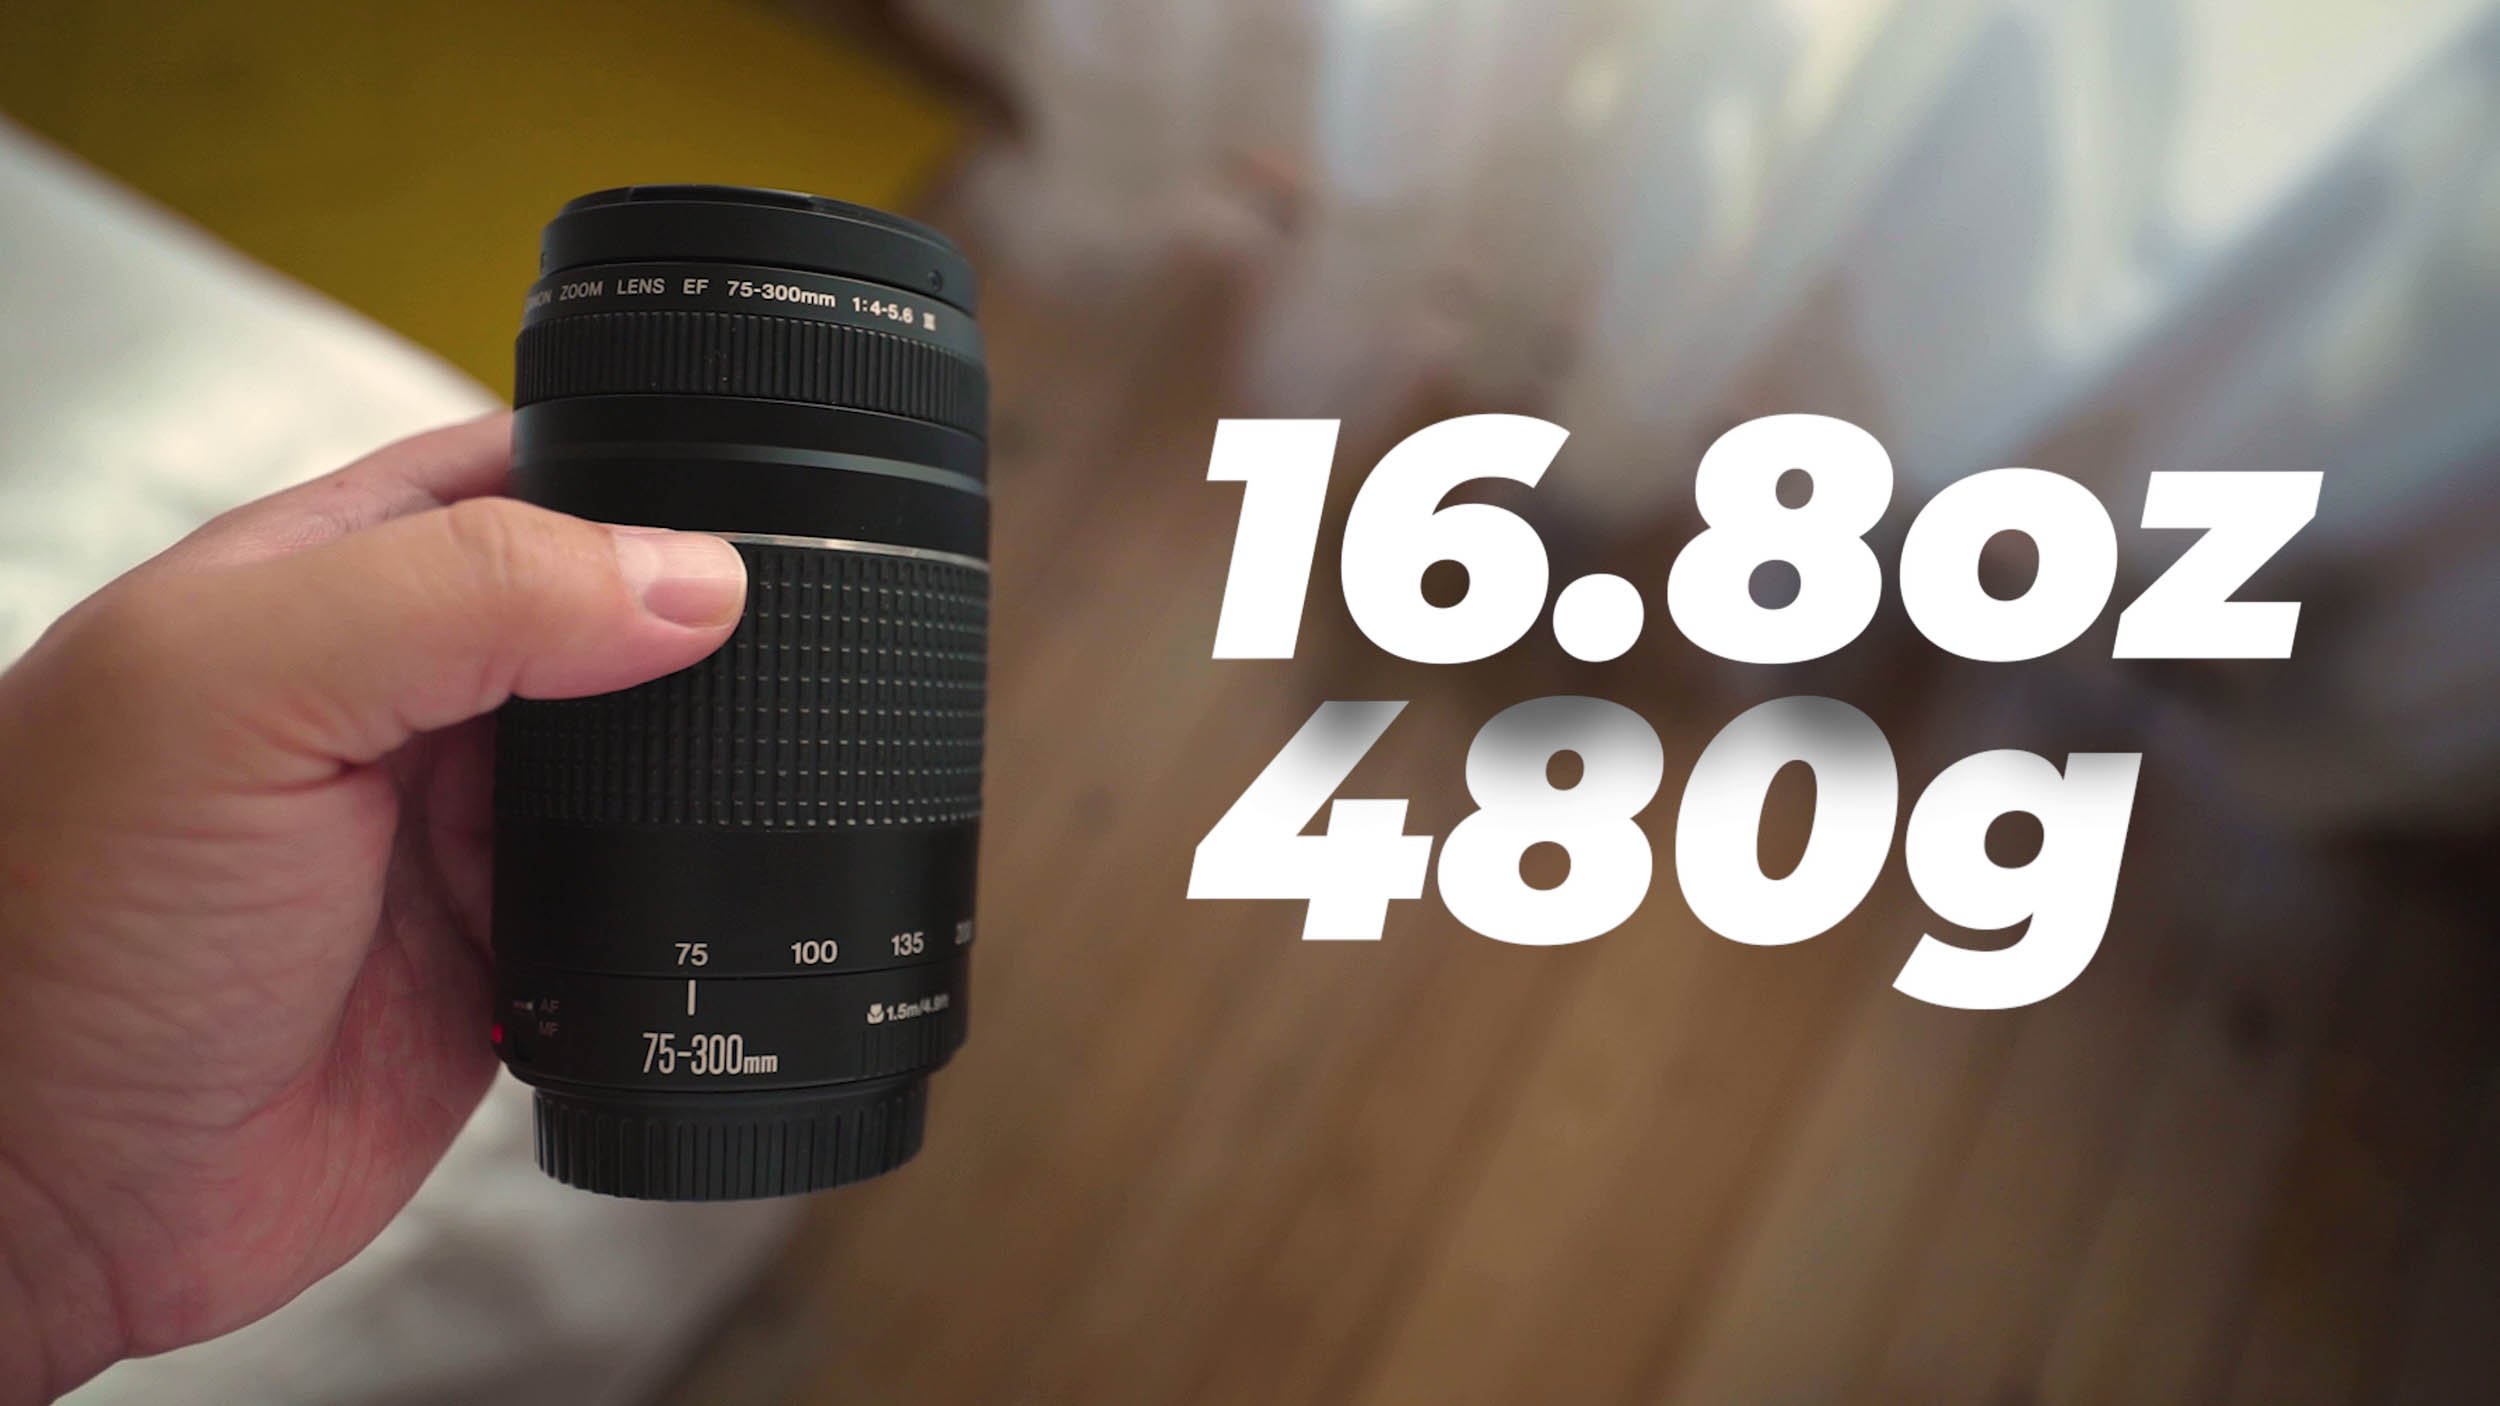 佳能EF 75-300mm f/4-5.6 III USM是最差的佳能镜头吗？ — SKYES Media